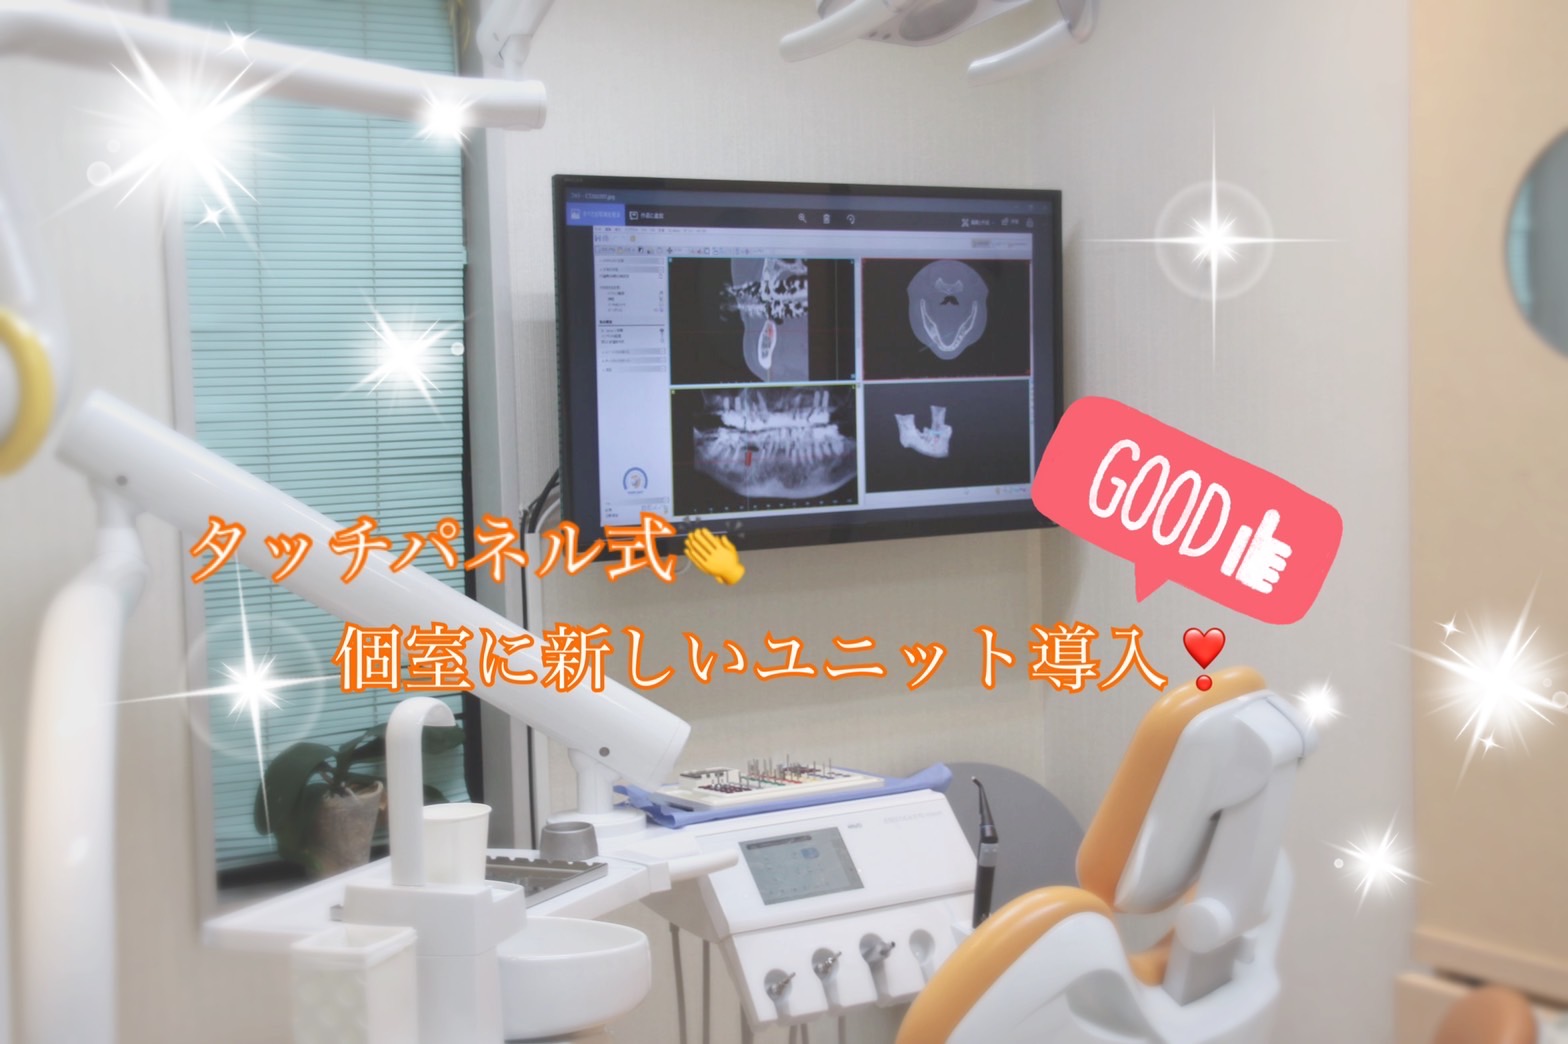 初台内藤歯科、最新式インプラントオペ用ユニット導入のお知らせ